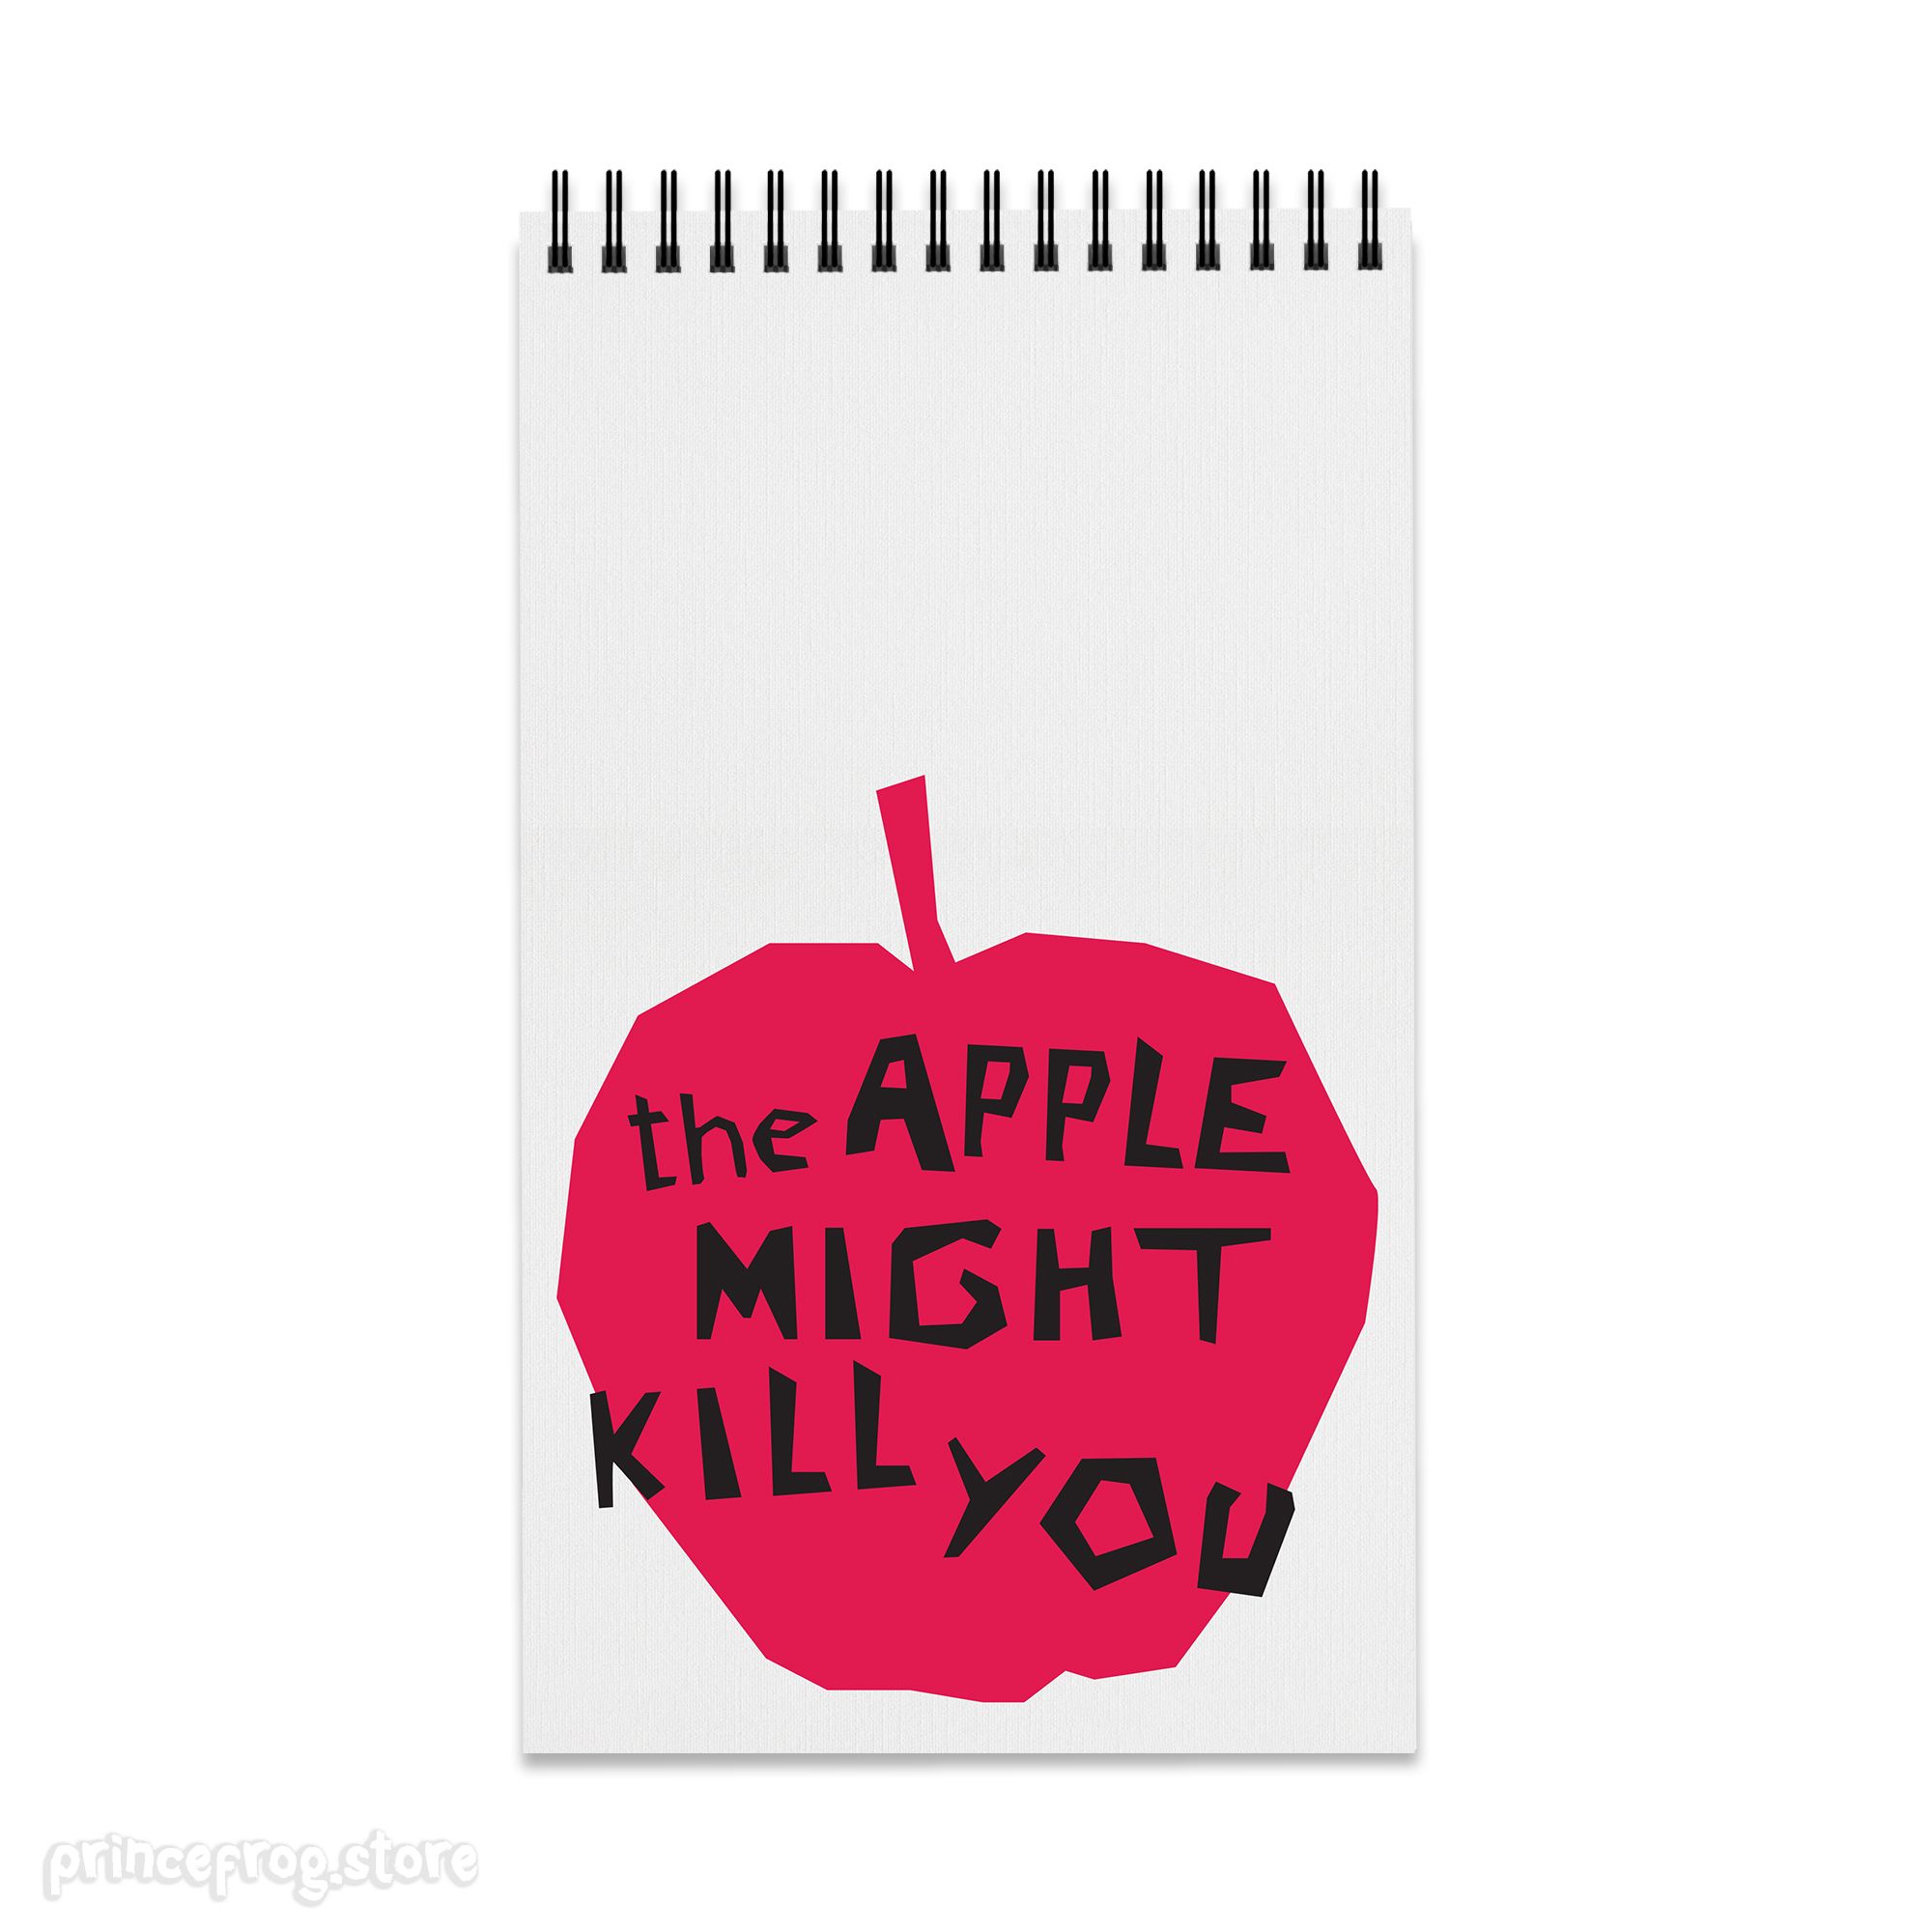 Σημειωματάριο Deadly Apple